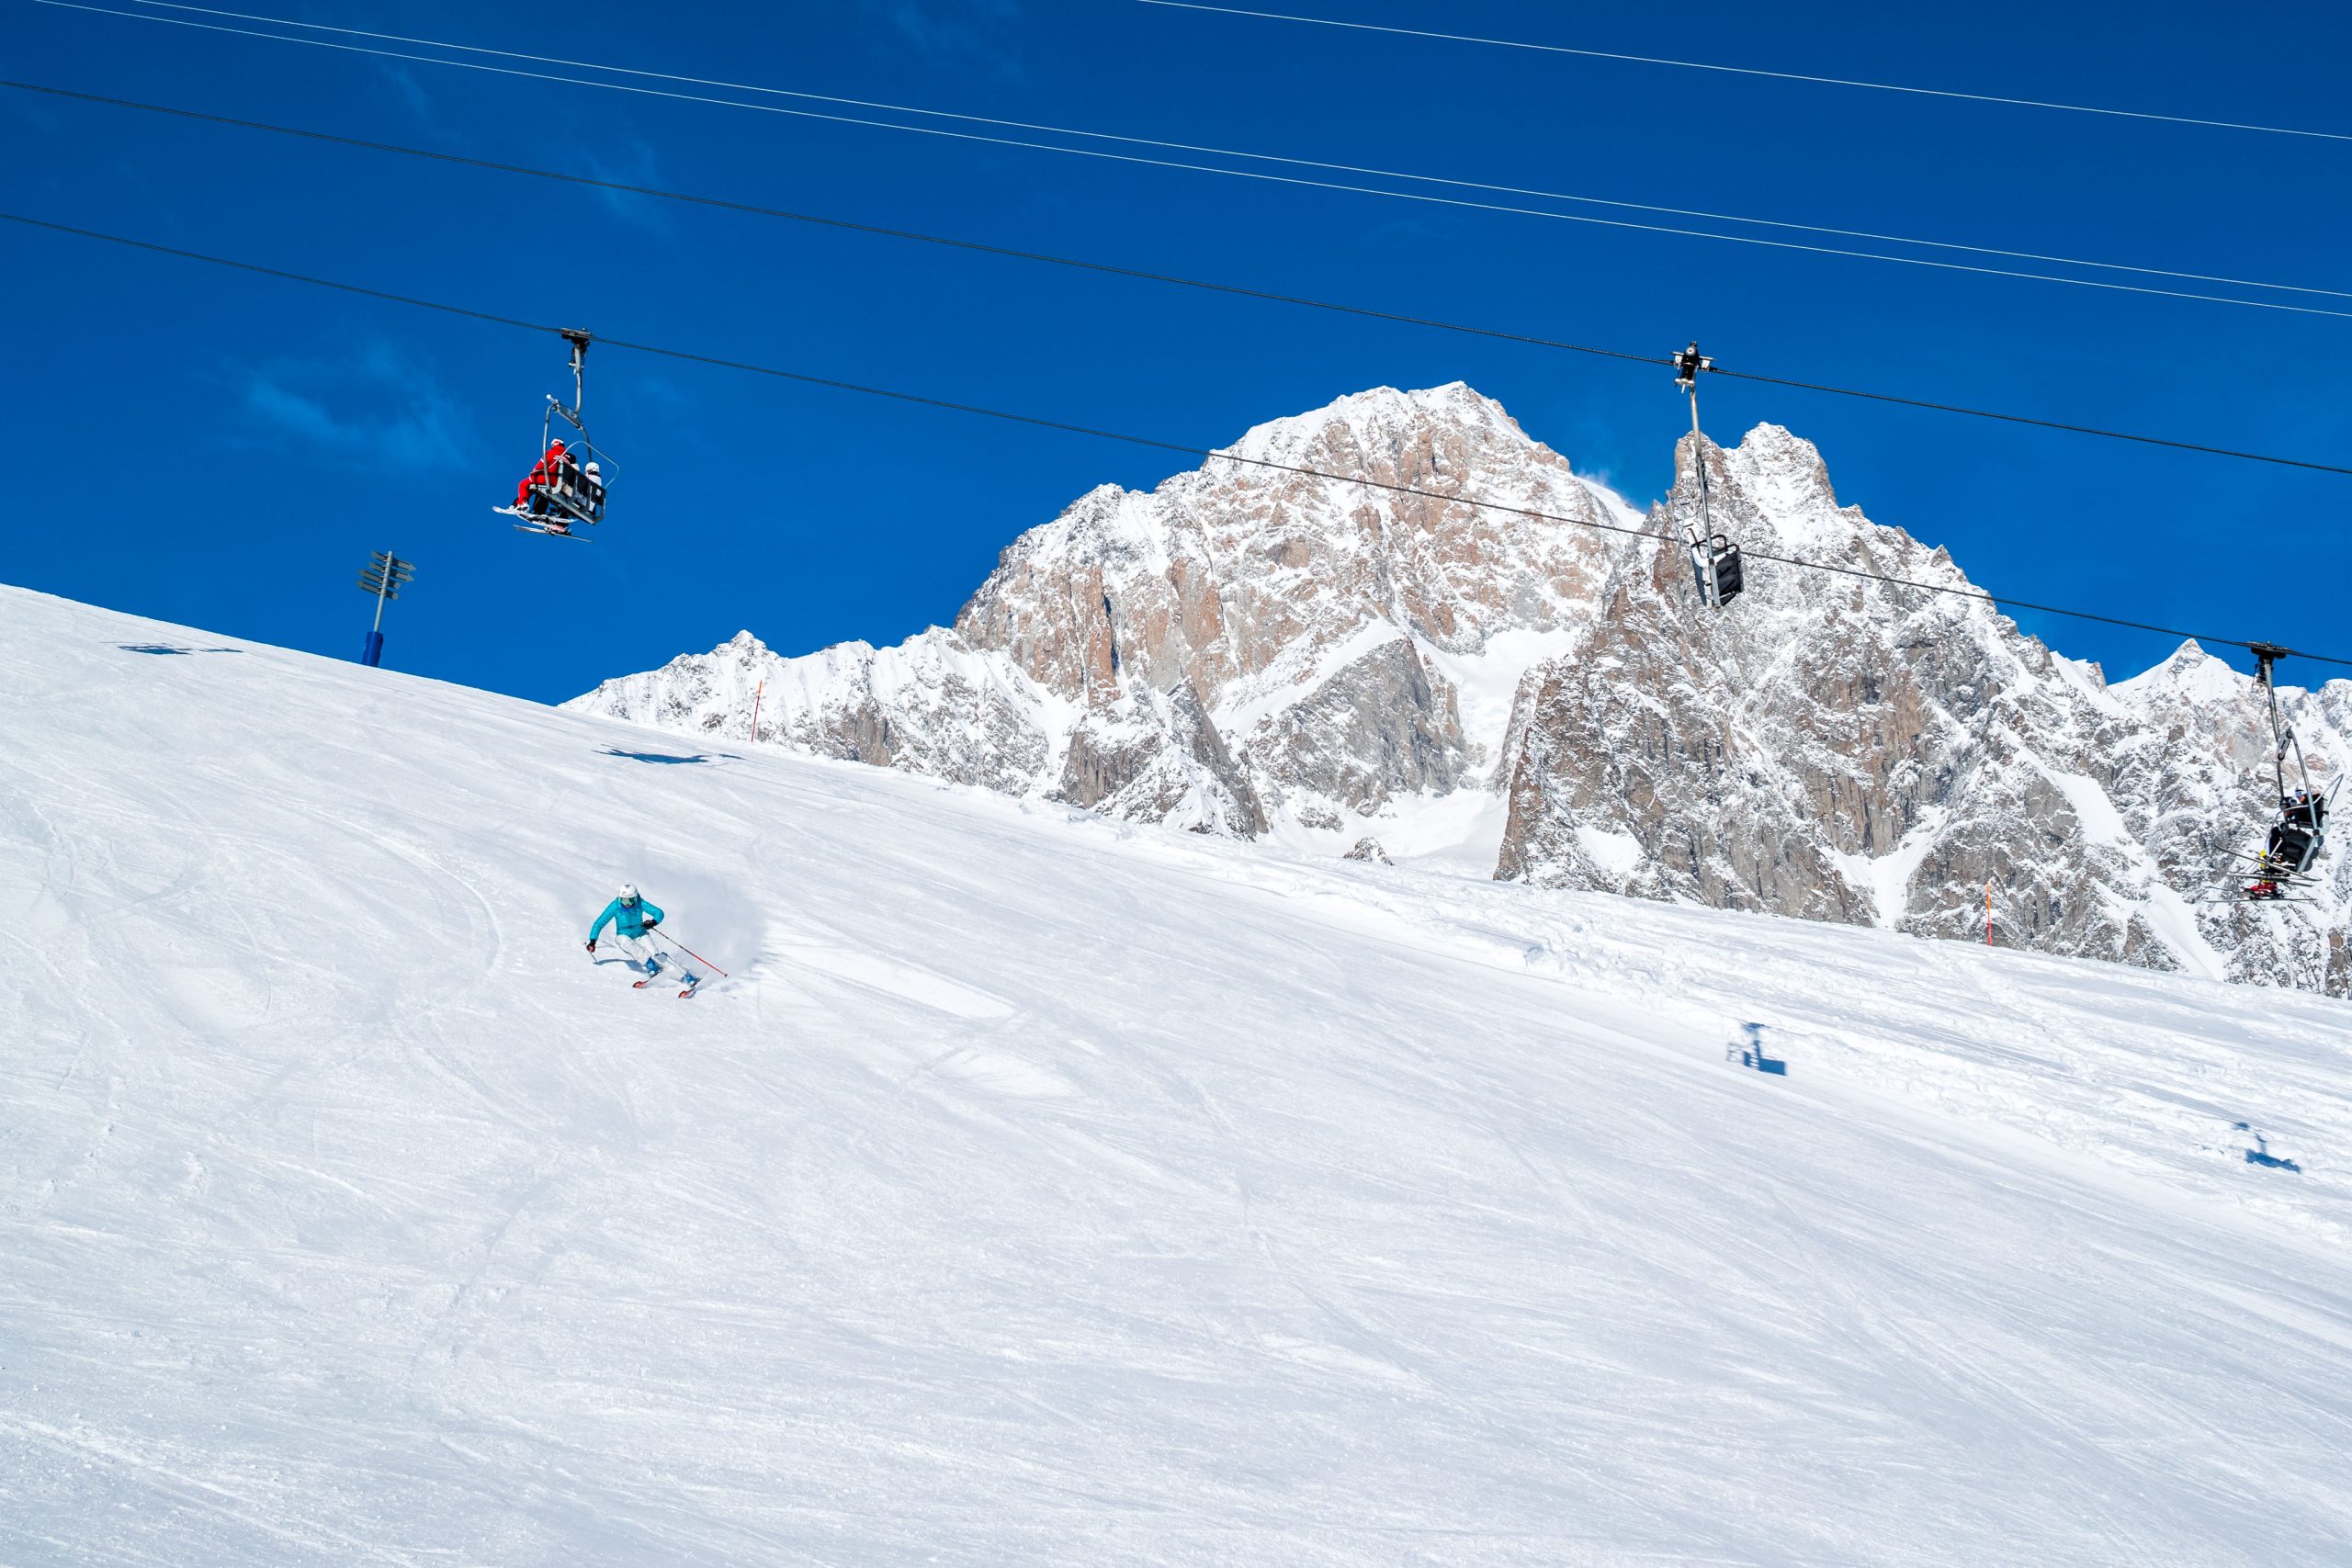 SCI ALPINO
L’attività invernale per eccellenza! Scia nel cuore delle Alpi con una vista mozzafiato sul Monte Bianco: scegli tra 18 impianti di risalita e oltre 33 piste di sci adatte a ogni livello, dal principiante all’esperto, per un’esperienza senza limiti. Courmayeur offre piste perfettamente preparate e neve di qualità eccezionale, grazie anche all’innevamento programmato che copre oltre l’80% del comprensorio, garantendo prestazioni di alto livello. Preparati per un’emozionante avventura sulle piste intorno al Monte Bianco – è solo l’inizio.
Scopri di più
